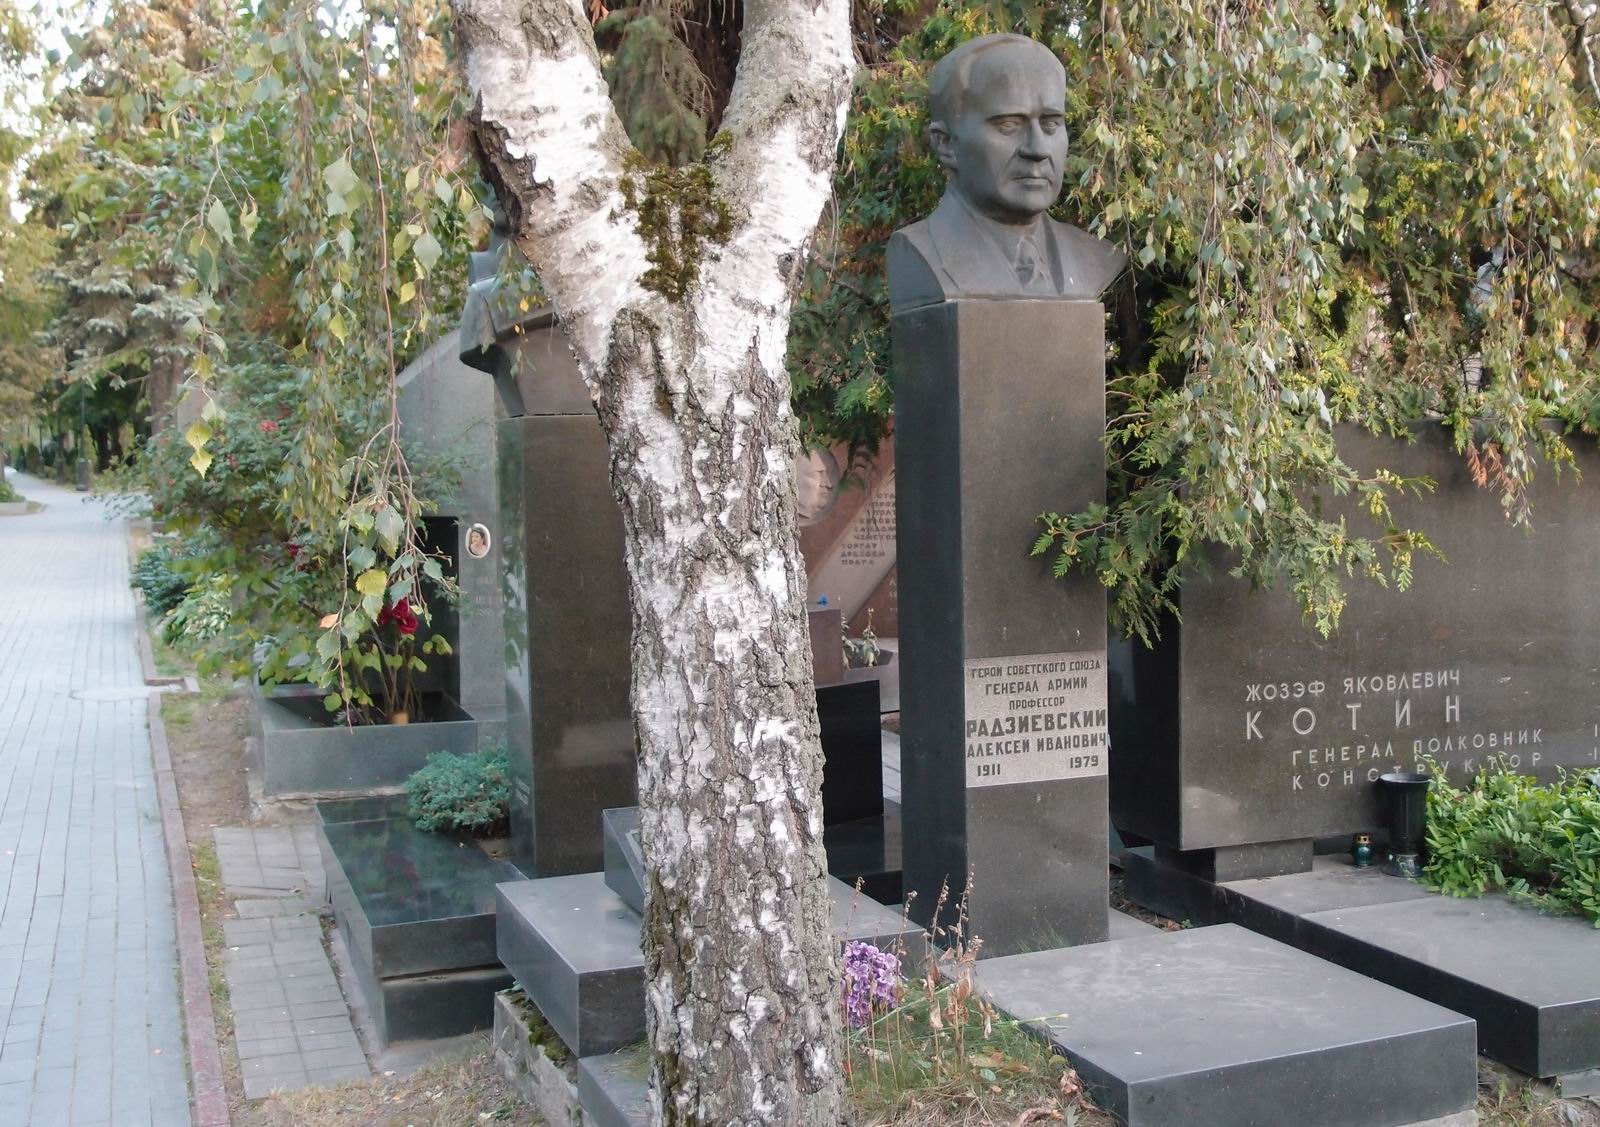 Памятник на могиле Радзиевского А.И. (1911-1979), ск. Б.Дюжев, арх. Е.Ефремов, на Новодевичьем кладбище (7-16-13).